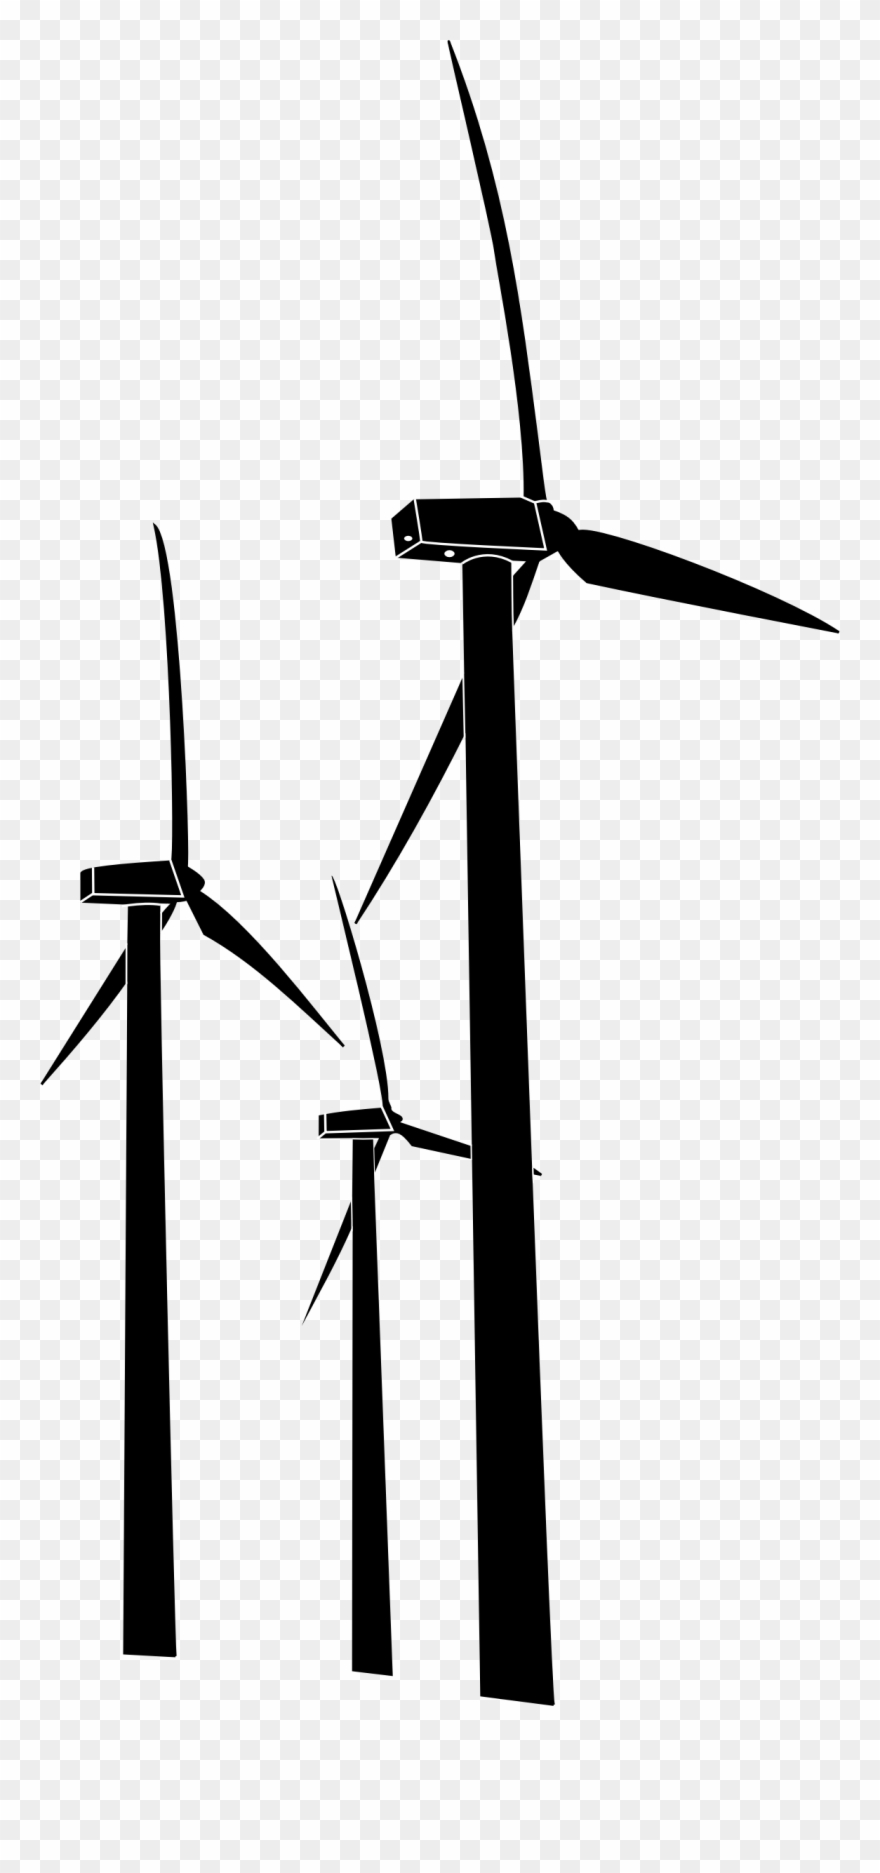 Wind Turbines.